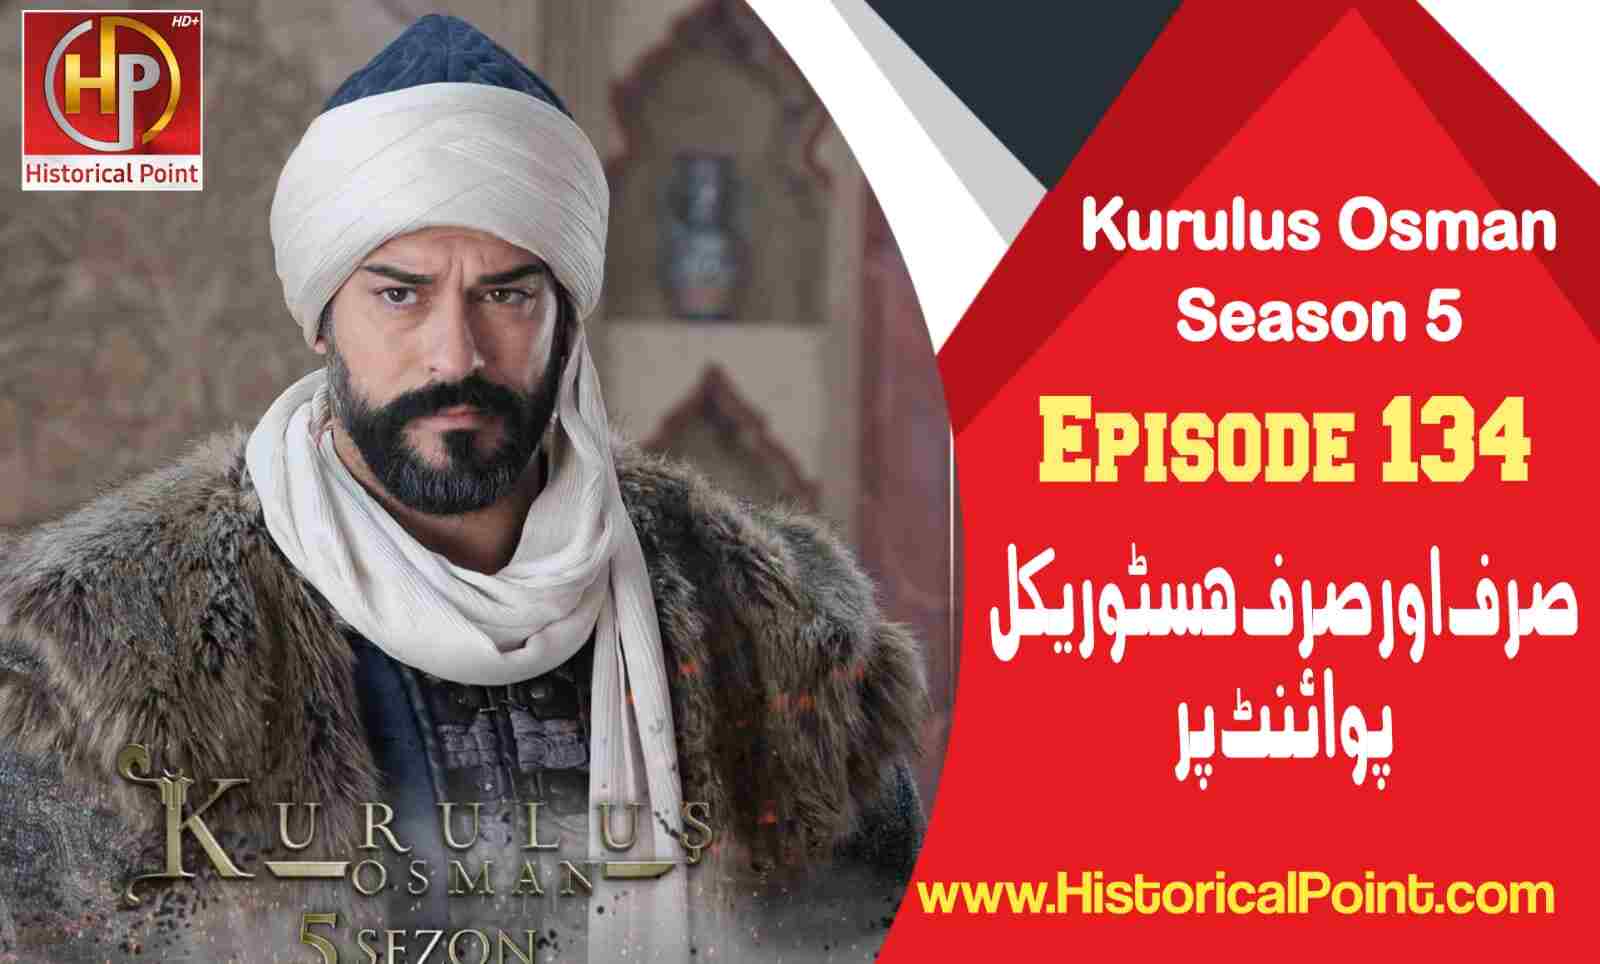 Kurulus Osman Episode 134 in urdu subtitles free